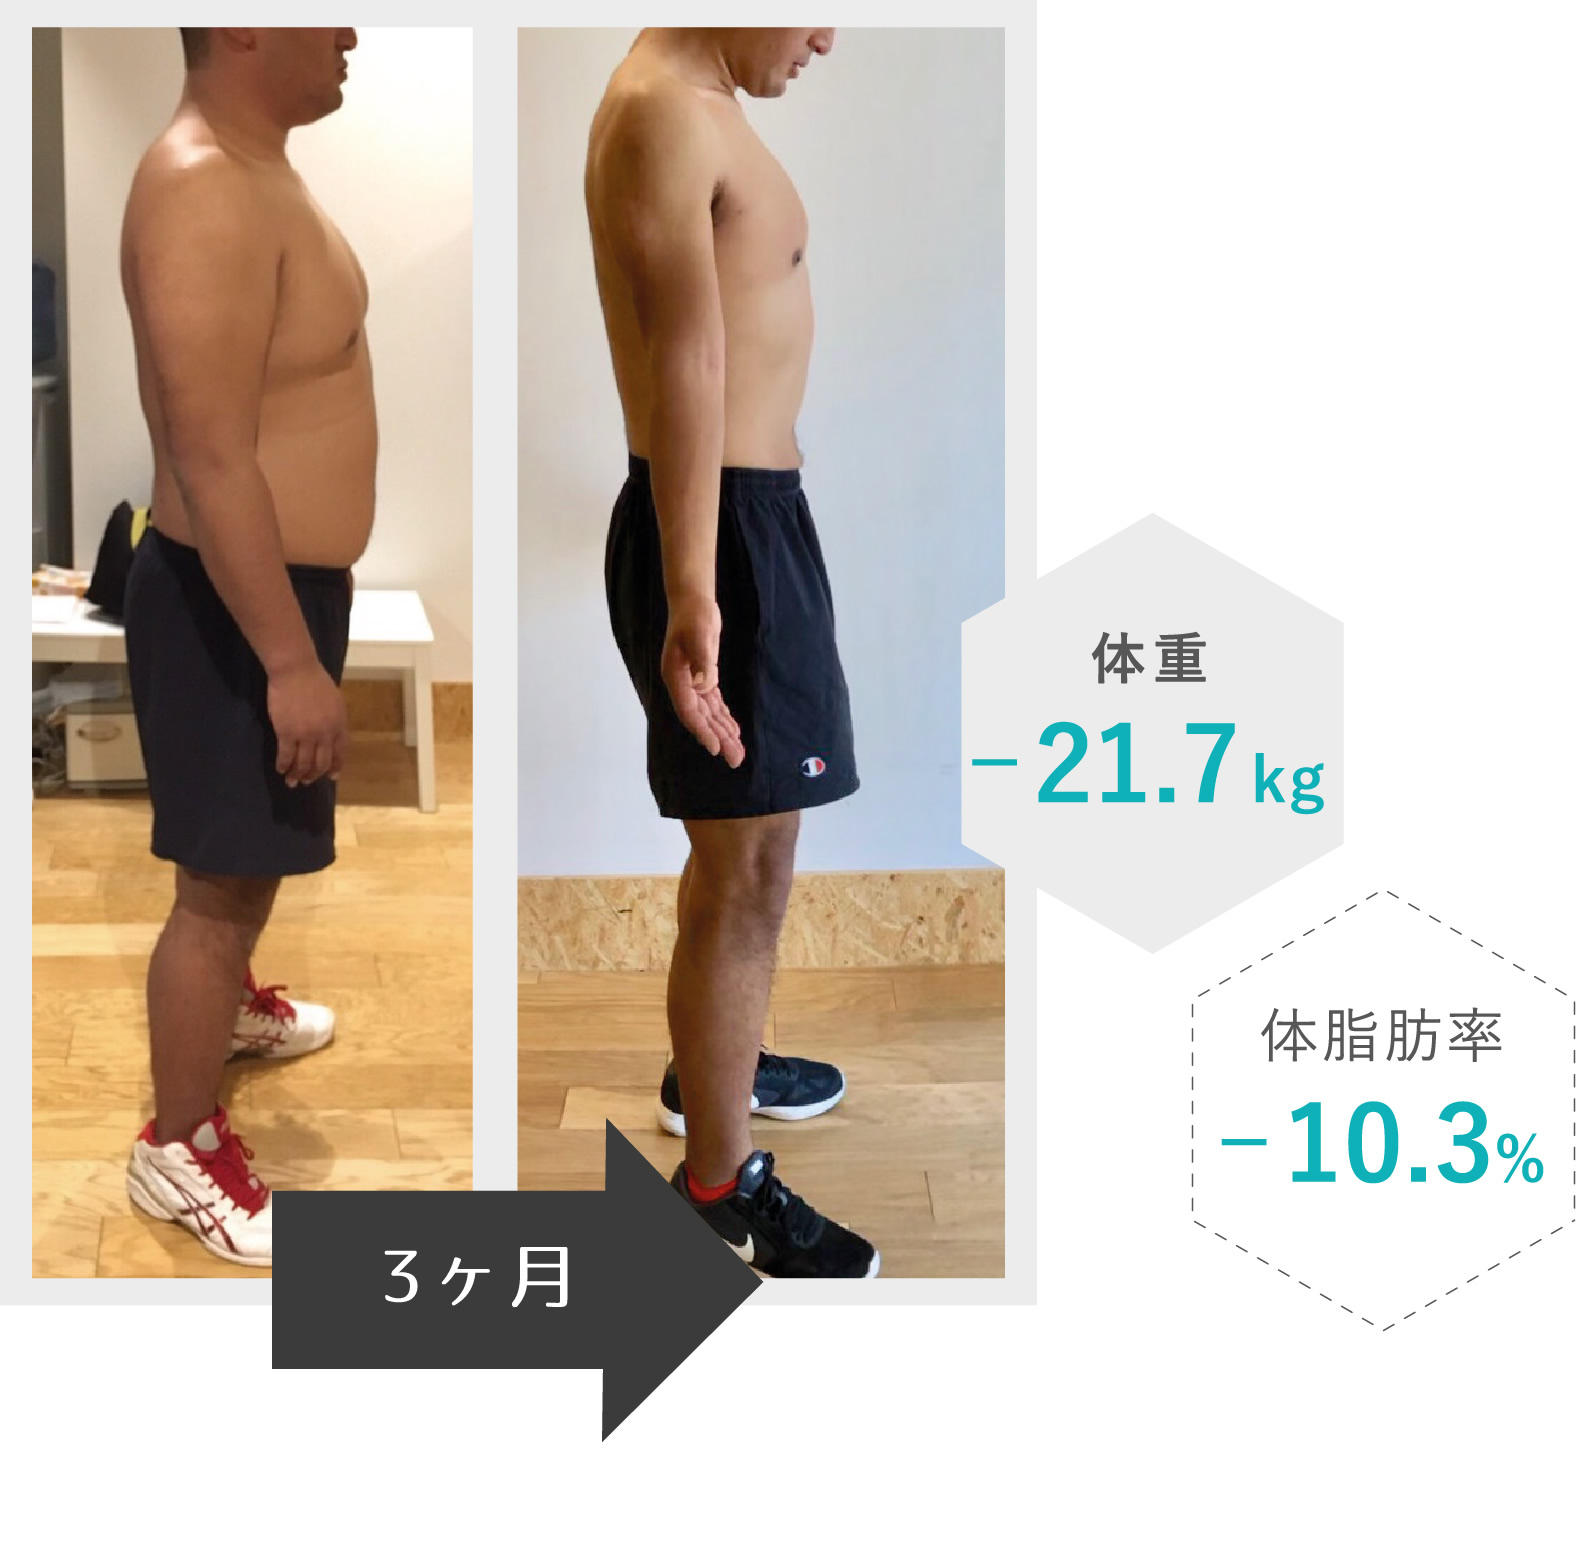 3ヶ月で体重-21.7kg、体脂肪率-10.3%を達成した男性モデル